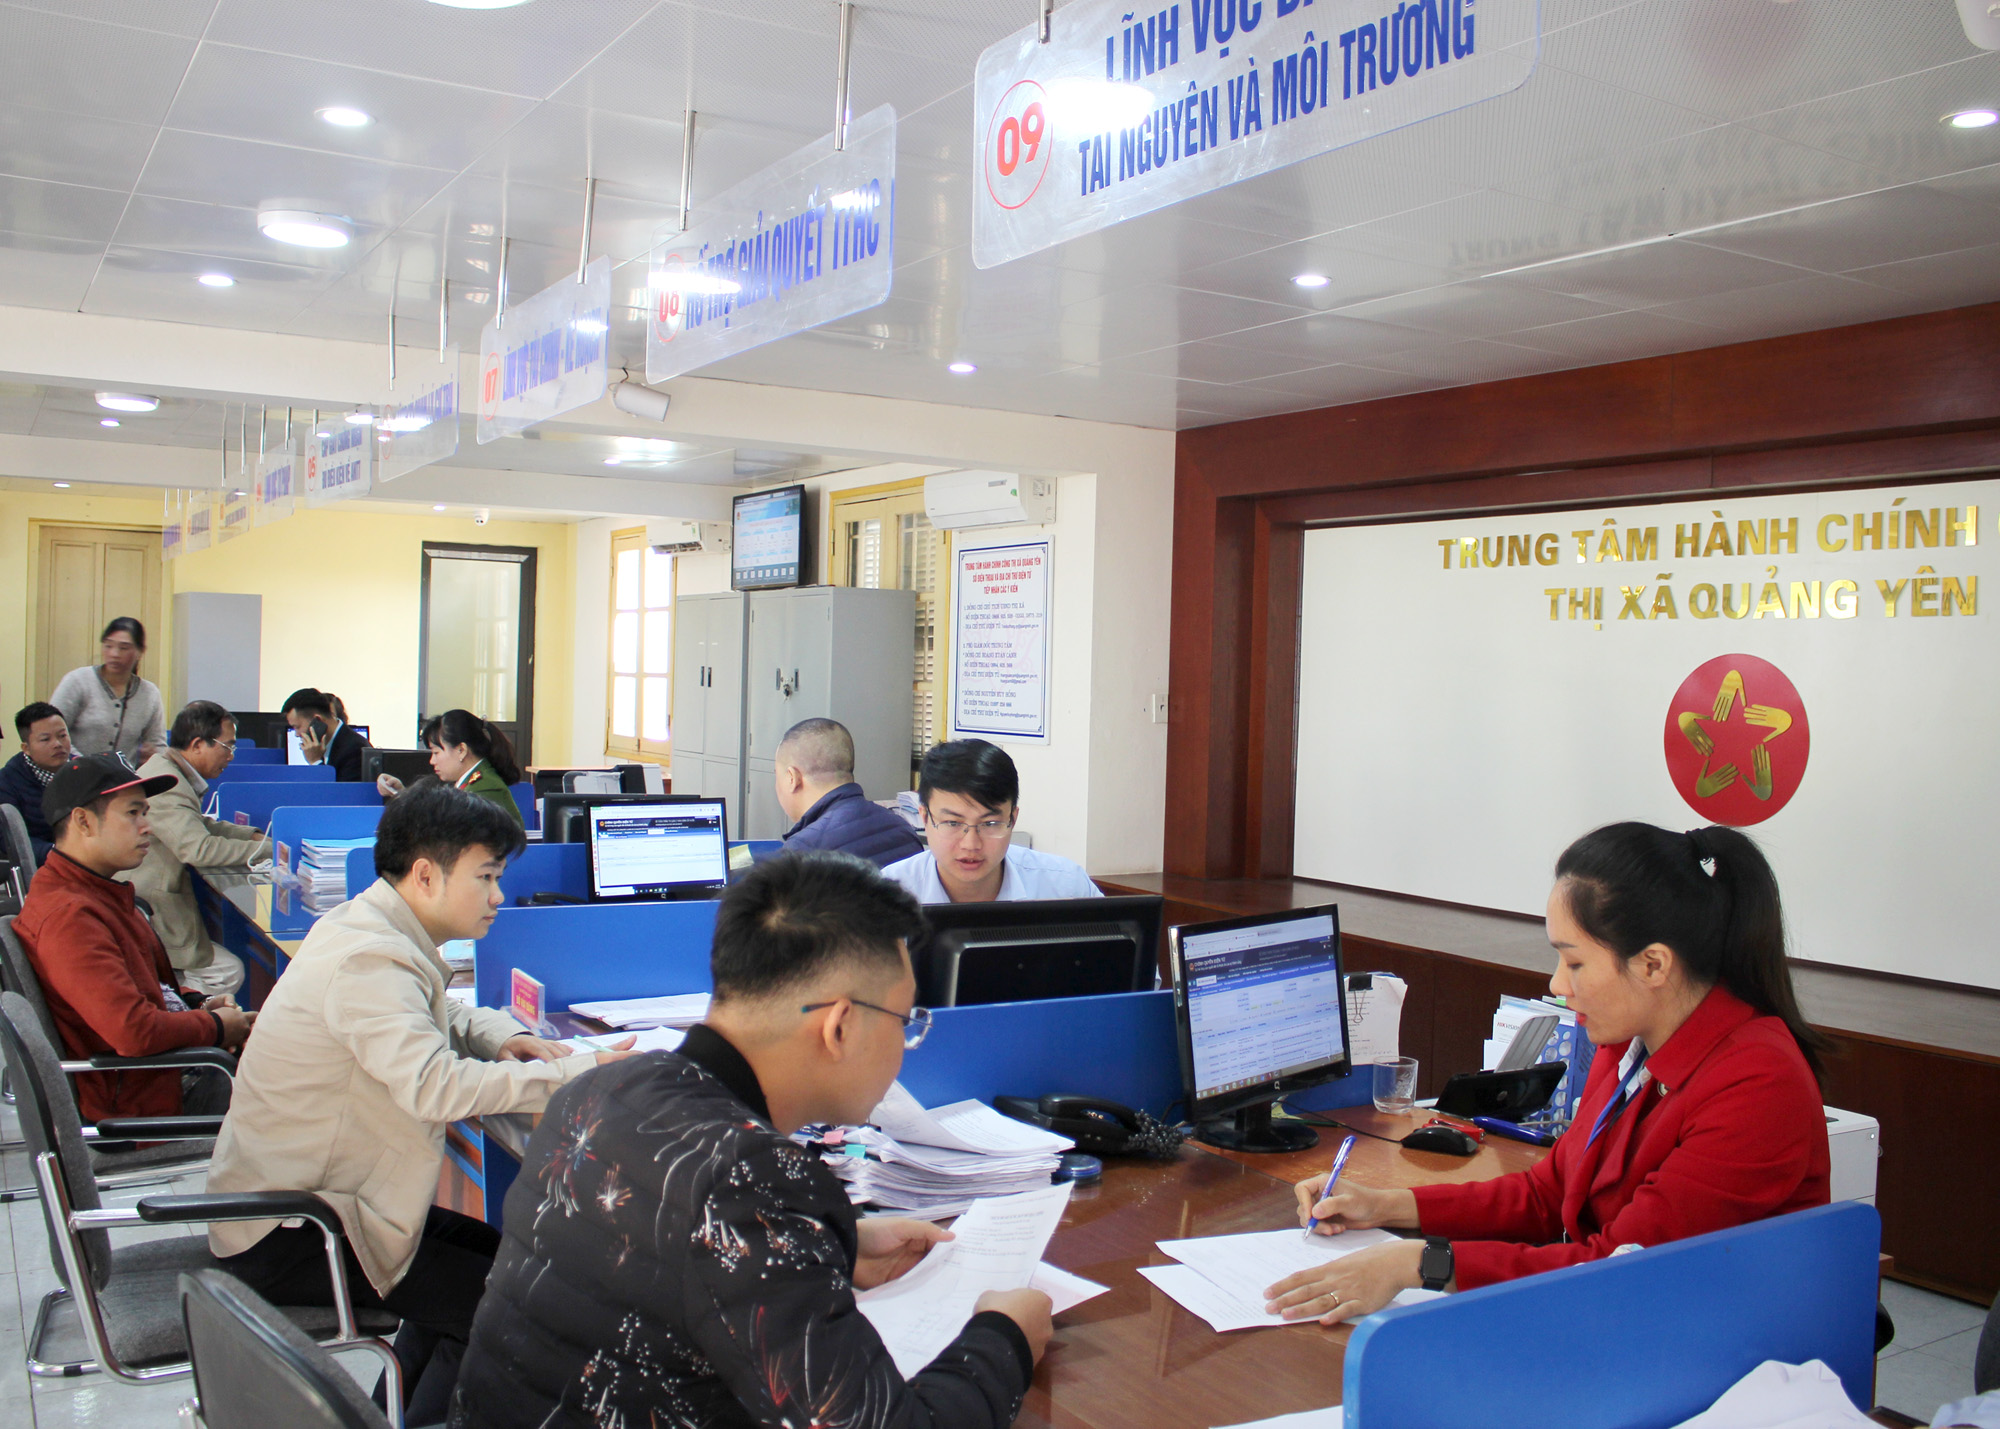 Cán bộ Trung tâm Hành chính TX Quảng Yên đang giải quyết thủ tục hành chính cho người dân, ngày 5/12/2019